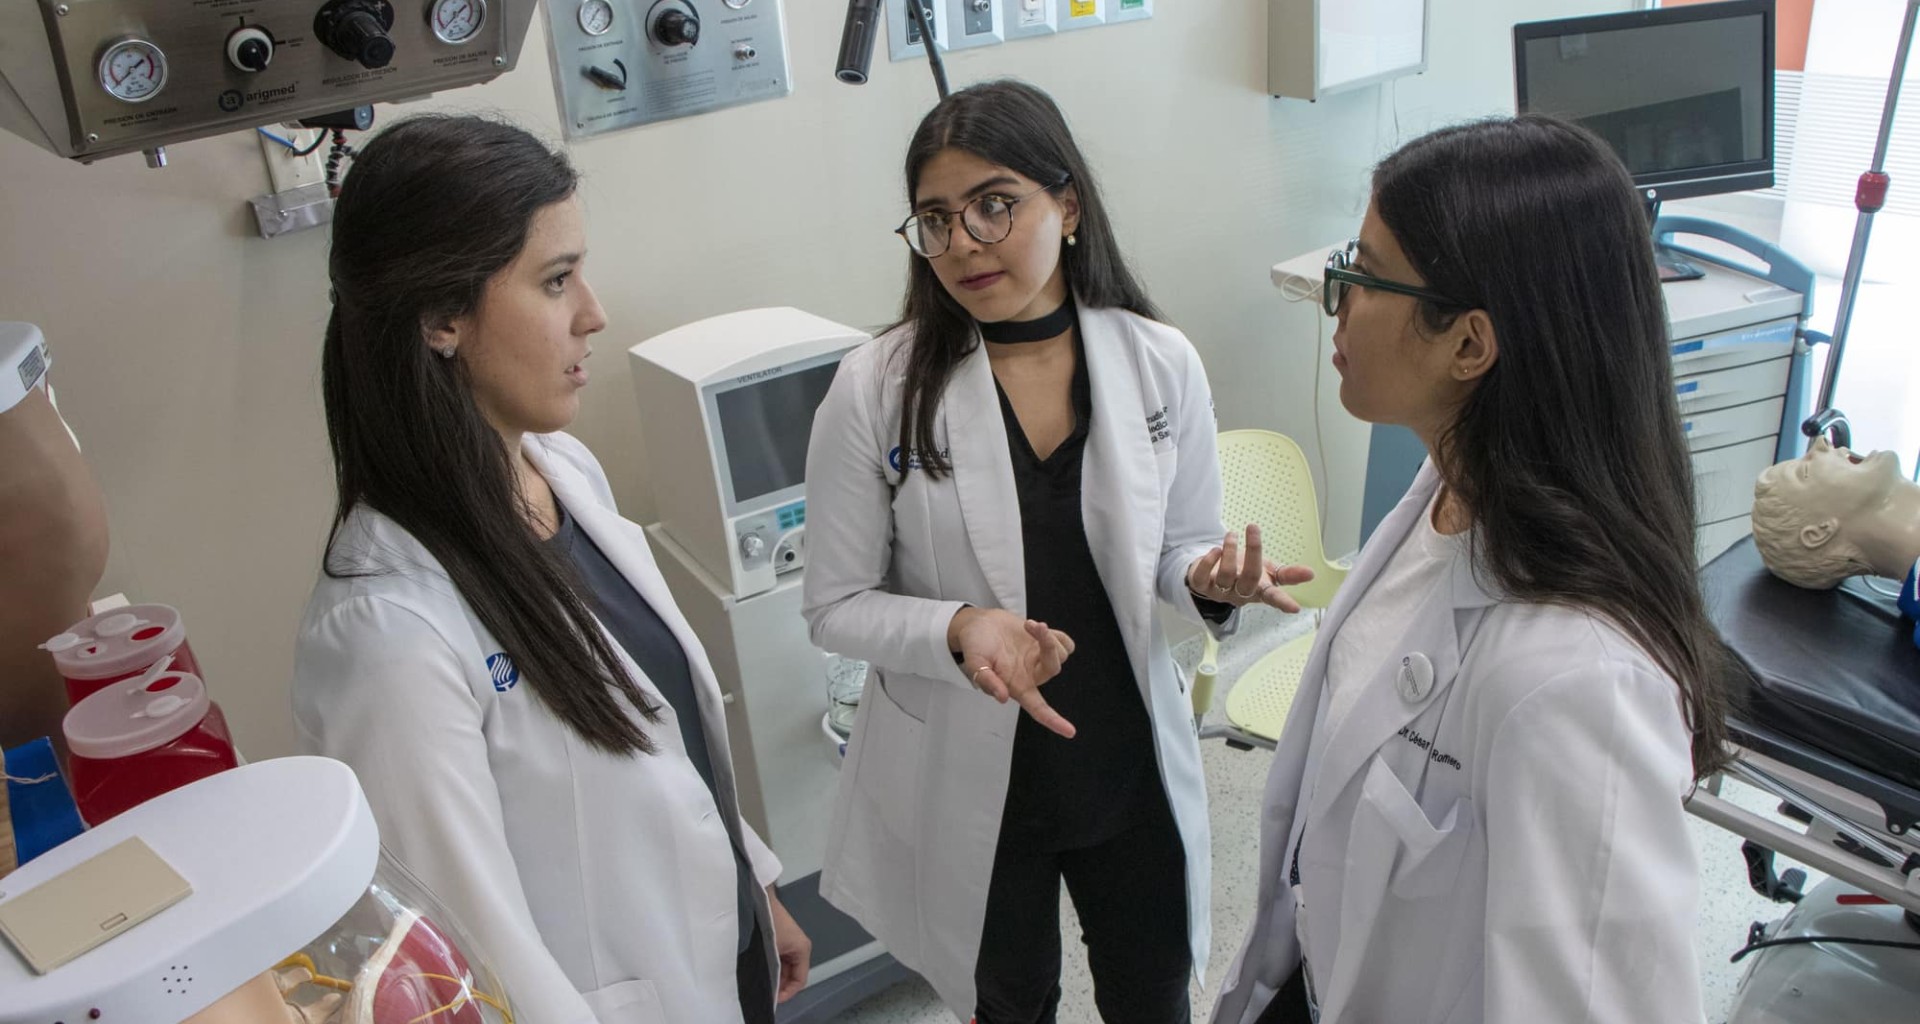 Examen de Residencias Médicas obtiene primer lugar Tec Guadalajara